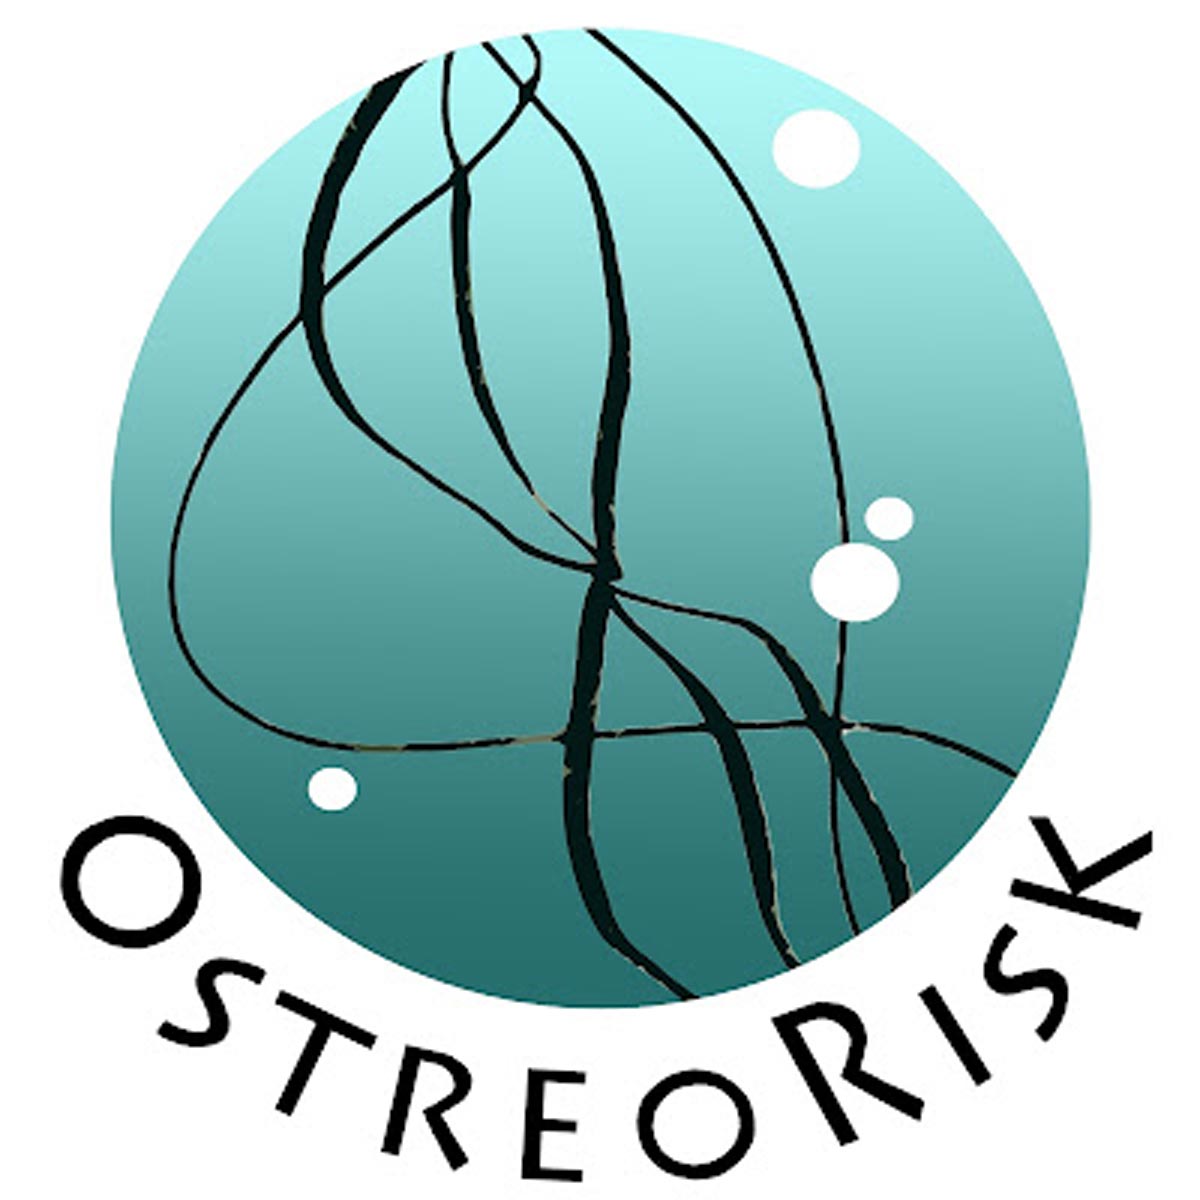 Marina Berdalet - Bugada - Disseny i il·lustració - Dibuix i disseny del logo - Projecte OSTREORISK. Institut de Ciències del Mar CSIC 2016